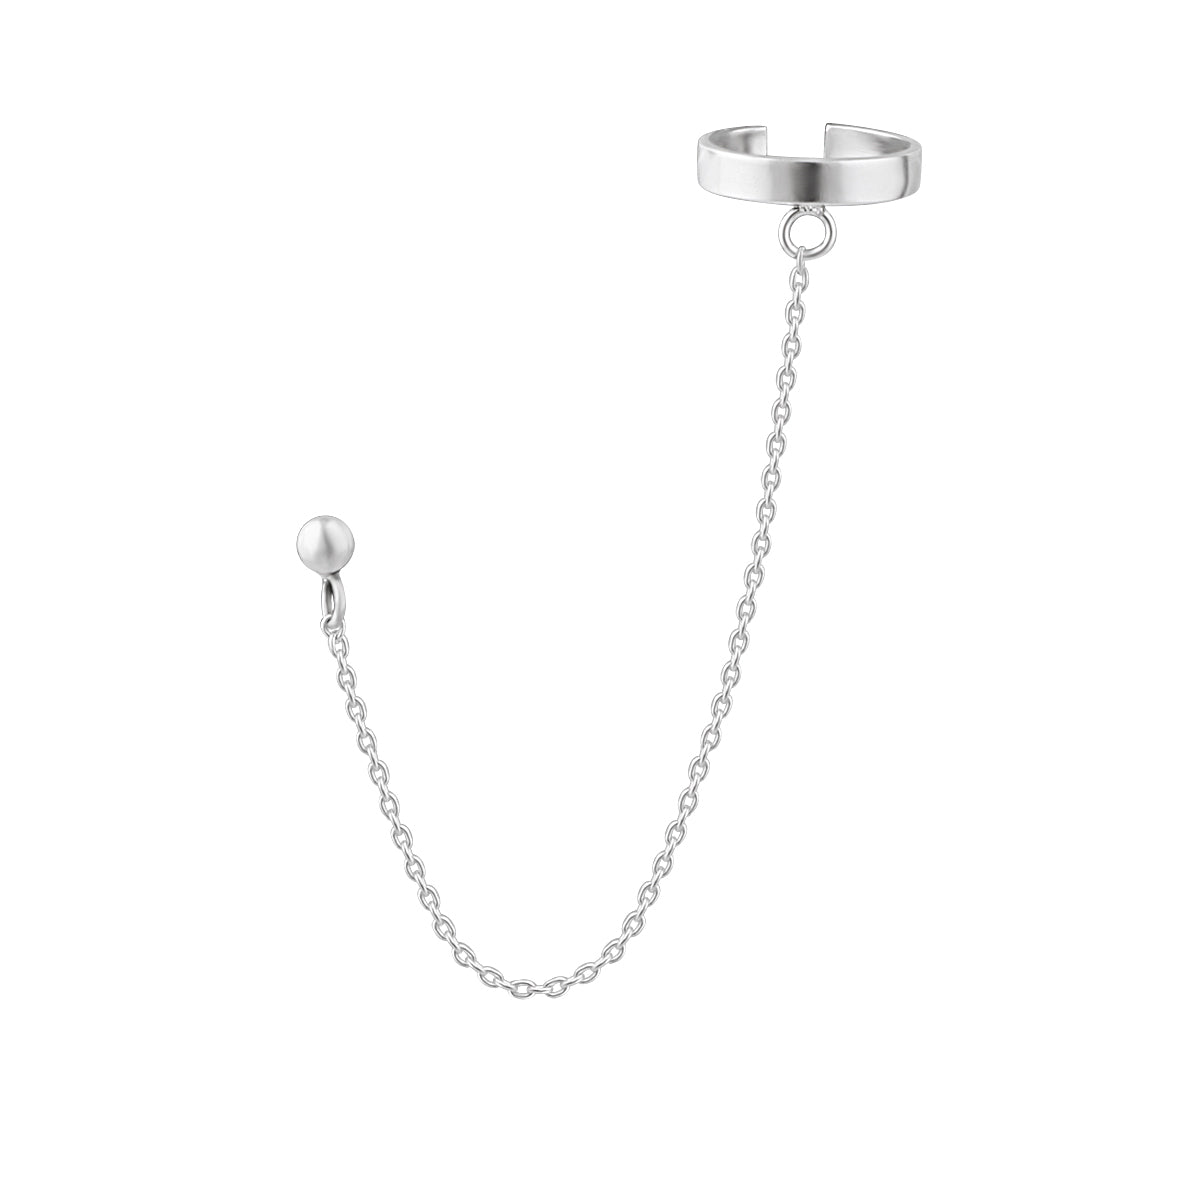 Single Sterling Silver Ear Cuff Ball Stud Chain Earring